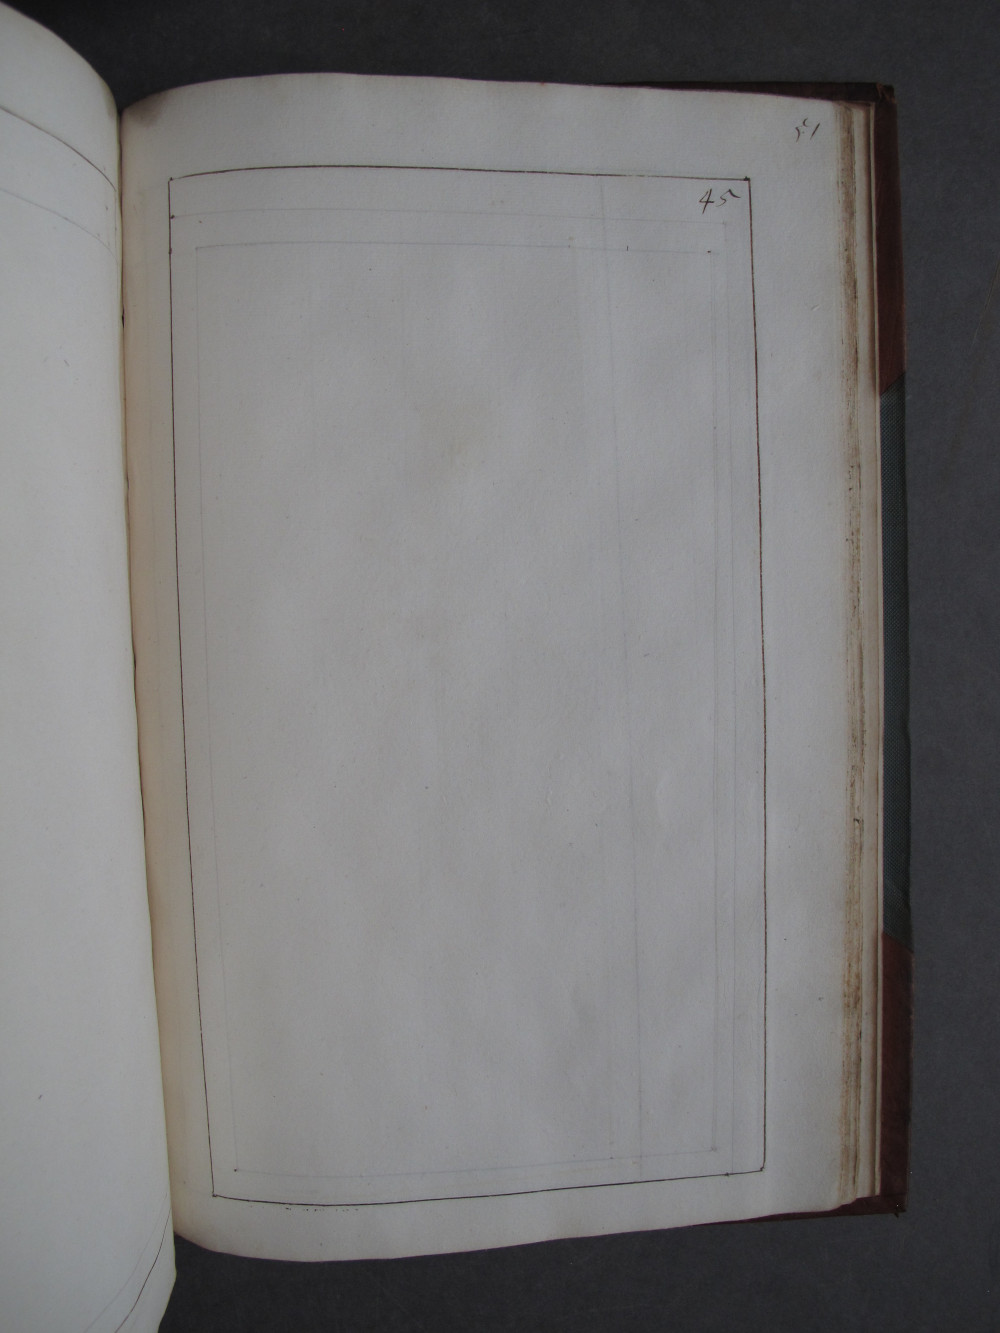 Folio 45 recto